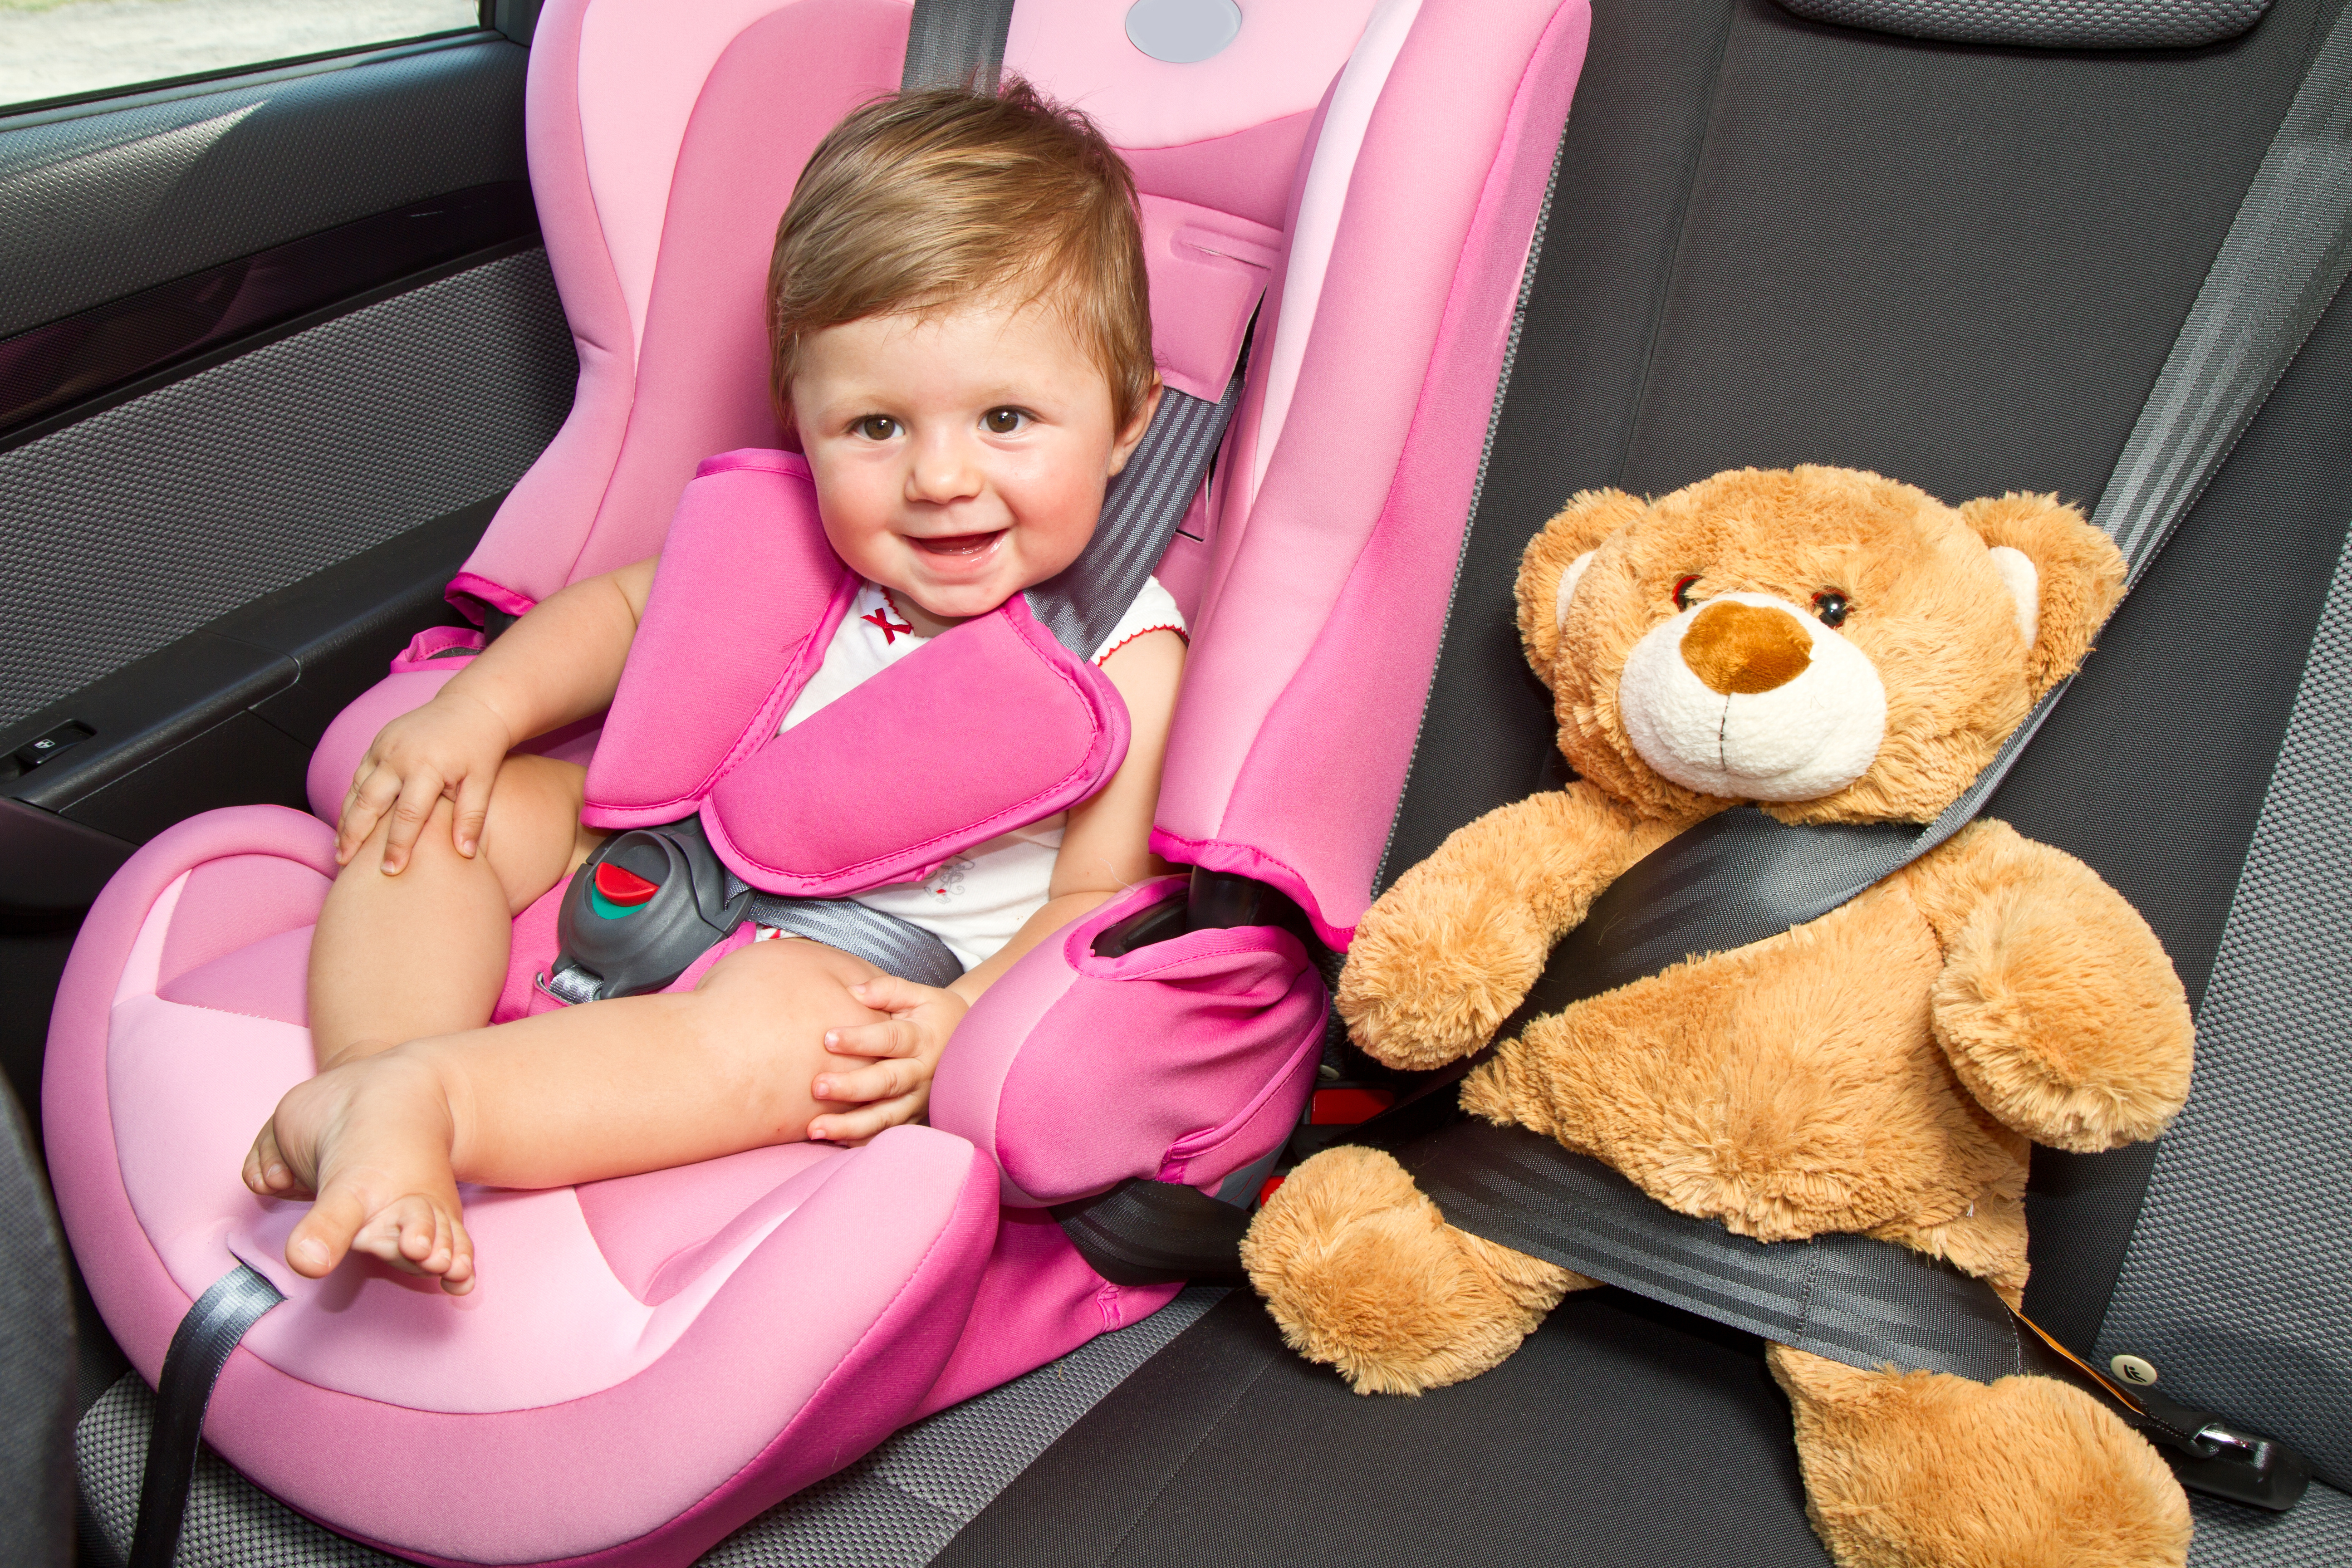 Пристегиваем ребенка в машине. Детское автокресло. Детский кресло для автомобиля. Ребенок в автокресле. Автокресло для детей в машине.